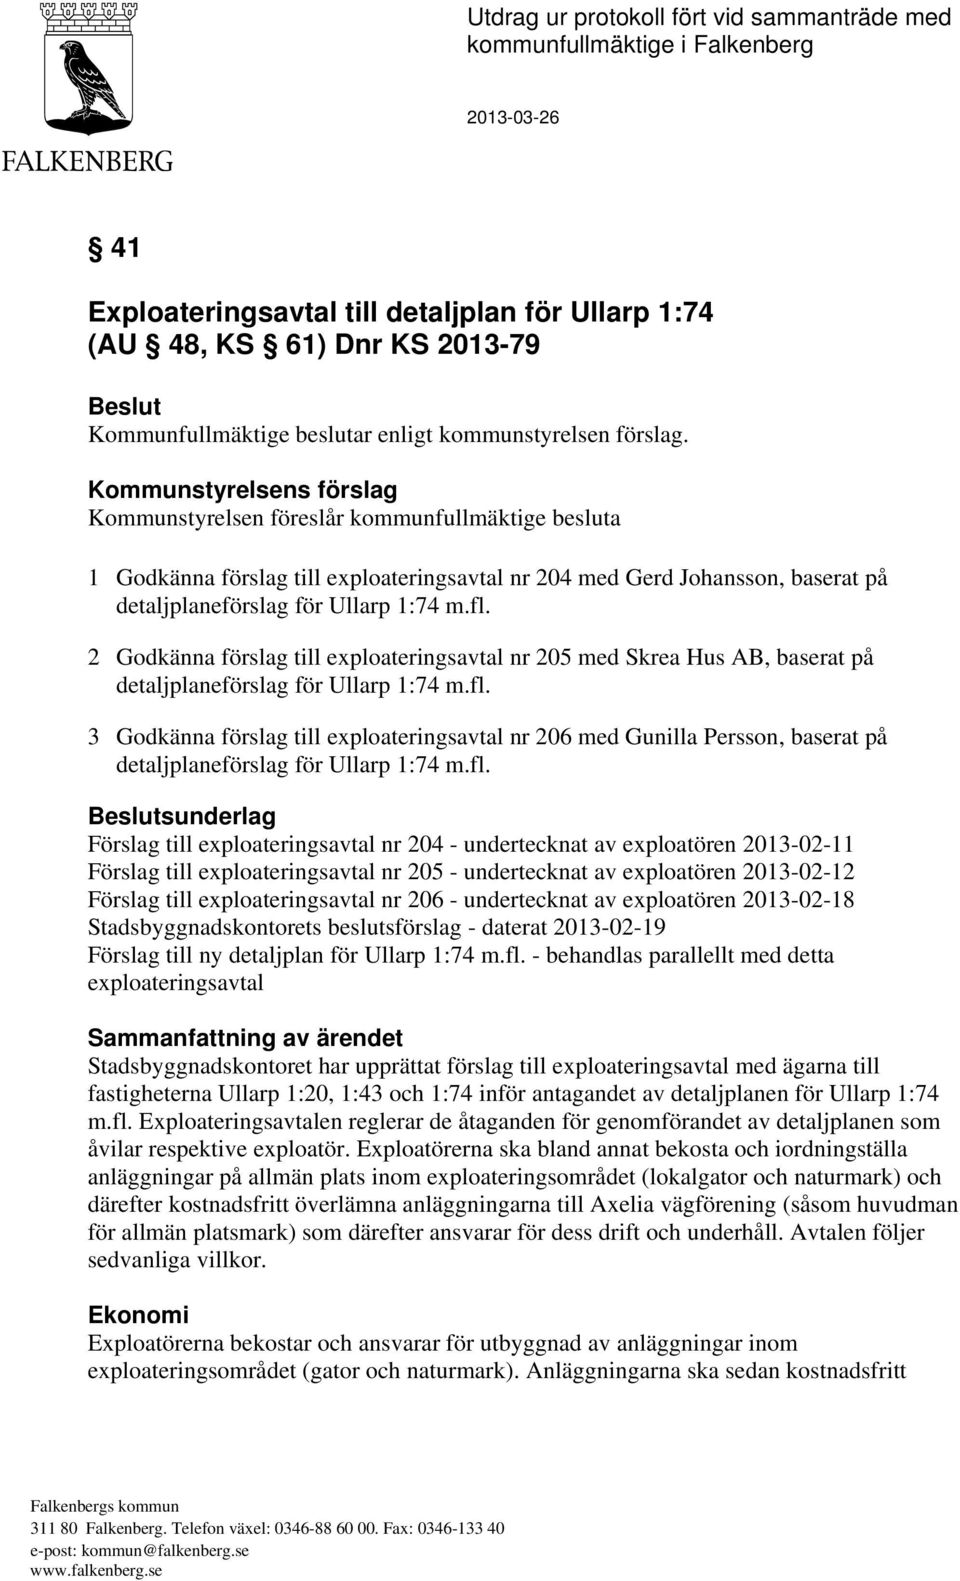 2 Godkänna förslag till exploateringsavtal nr 205 med Skrea Hus AB, baserat på detaljplaneförslag för Ullarp 1:74 m.fl.